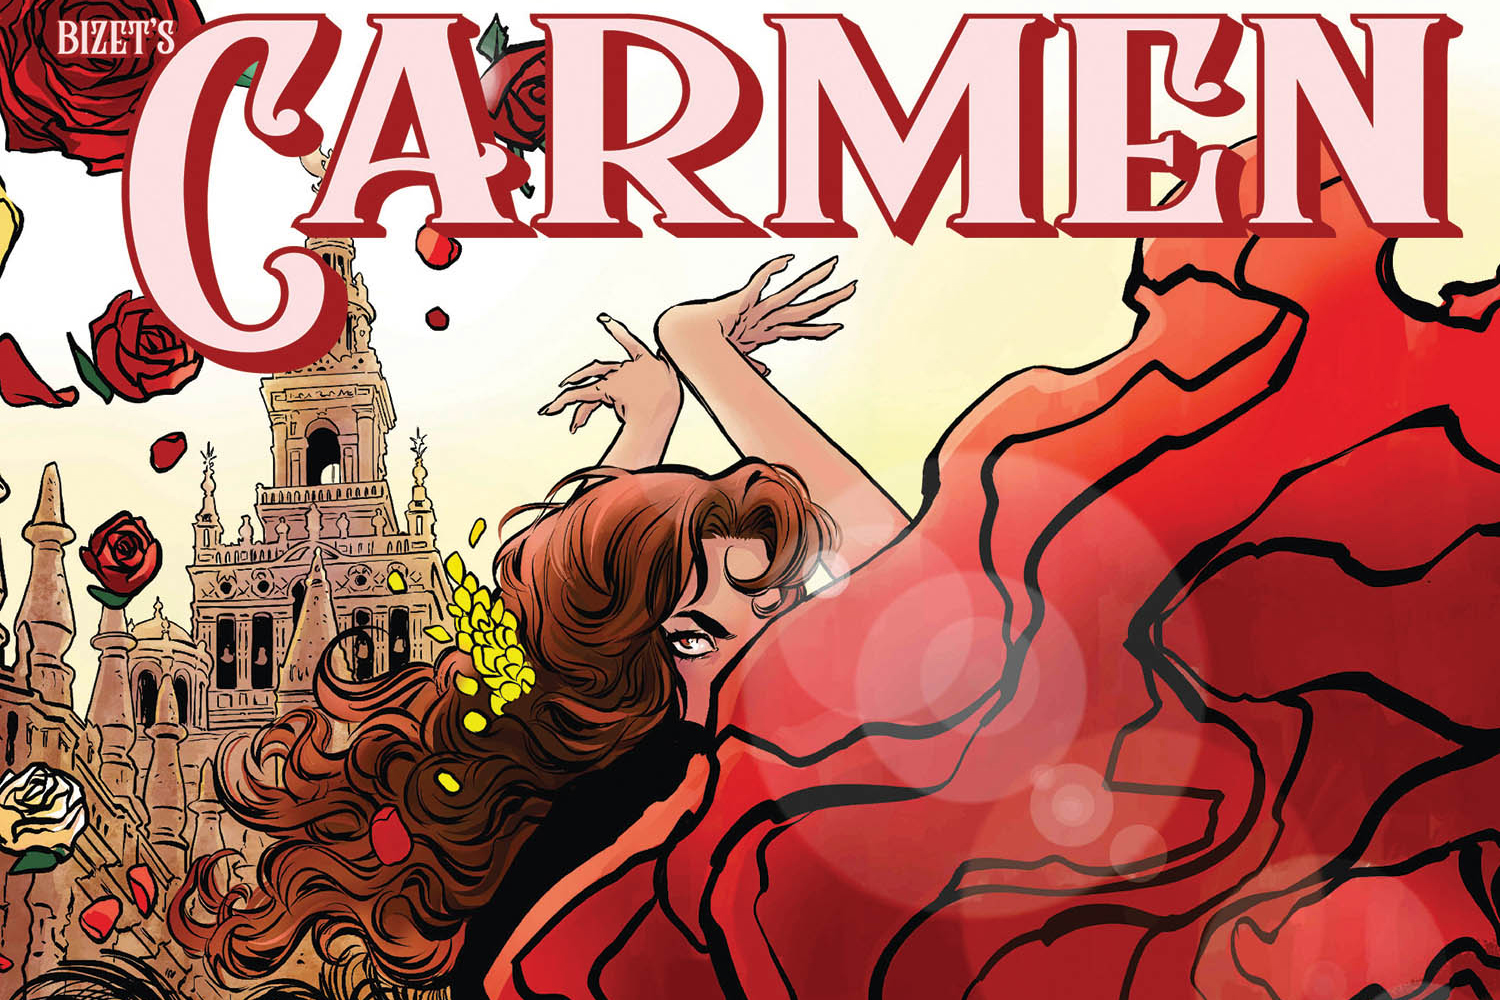 New graphic novel based on ‘Carmen’